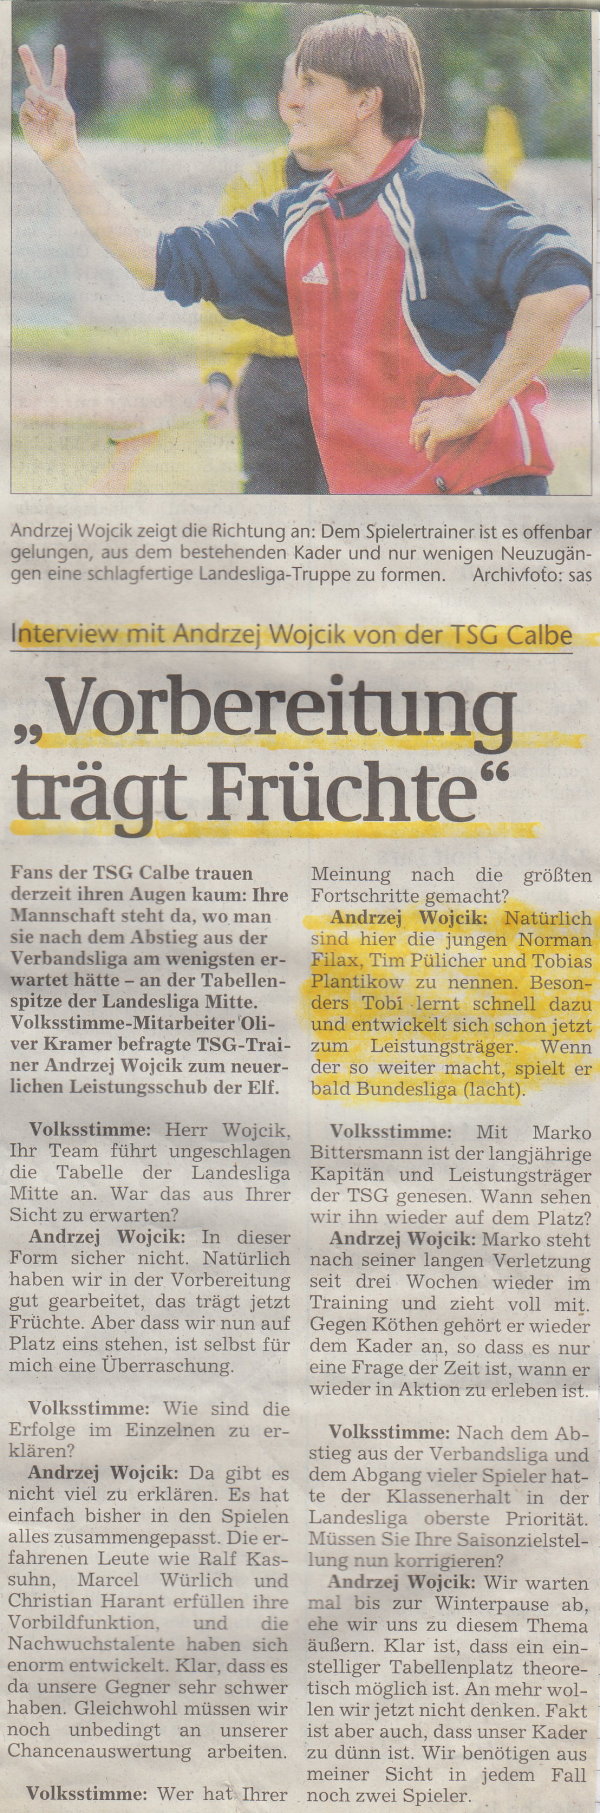 Volksstimme-Interview mit TSG-Trainer Andrzej Wojcik.